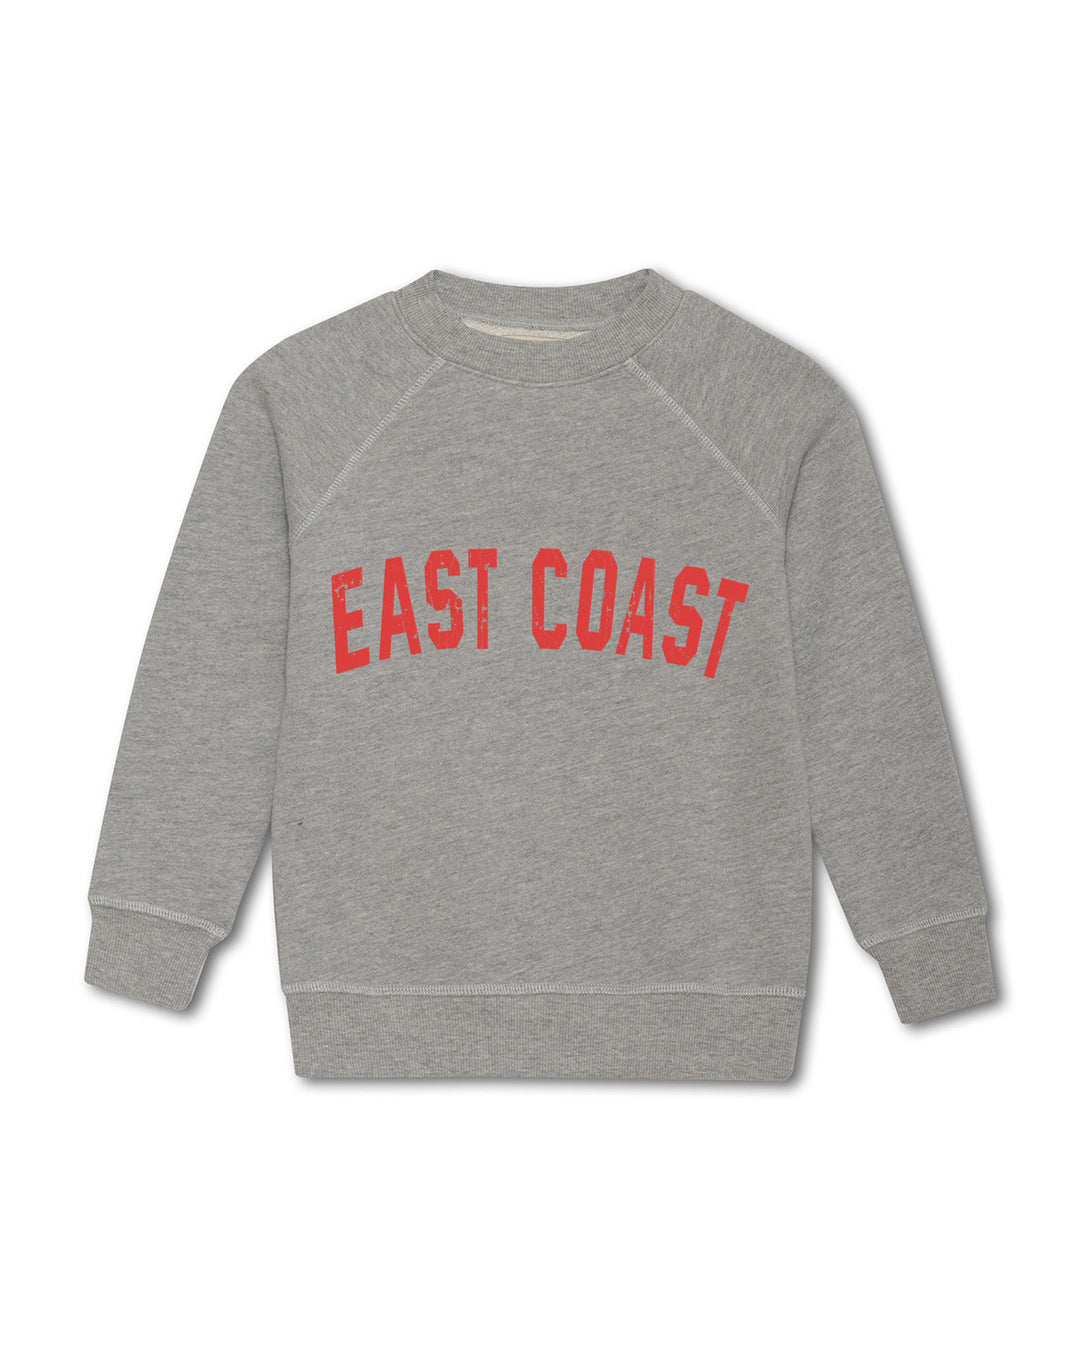 Kids East Coast Sweatshirt